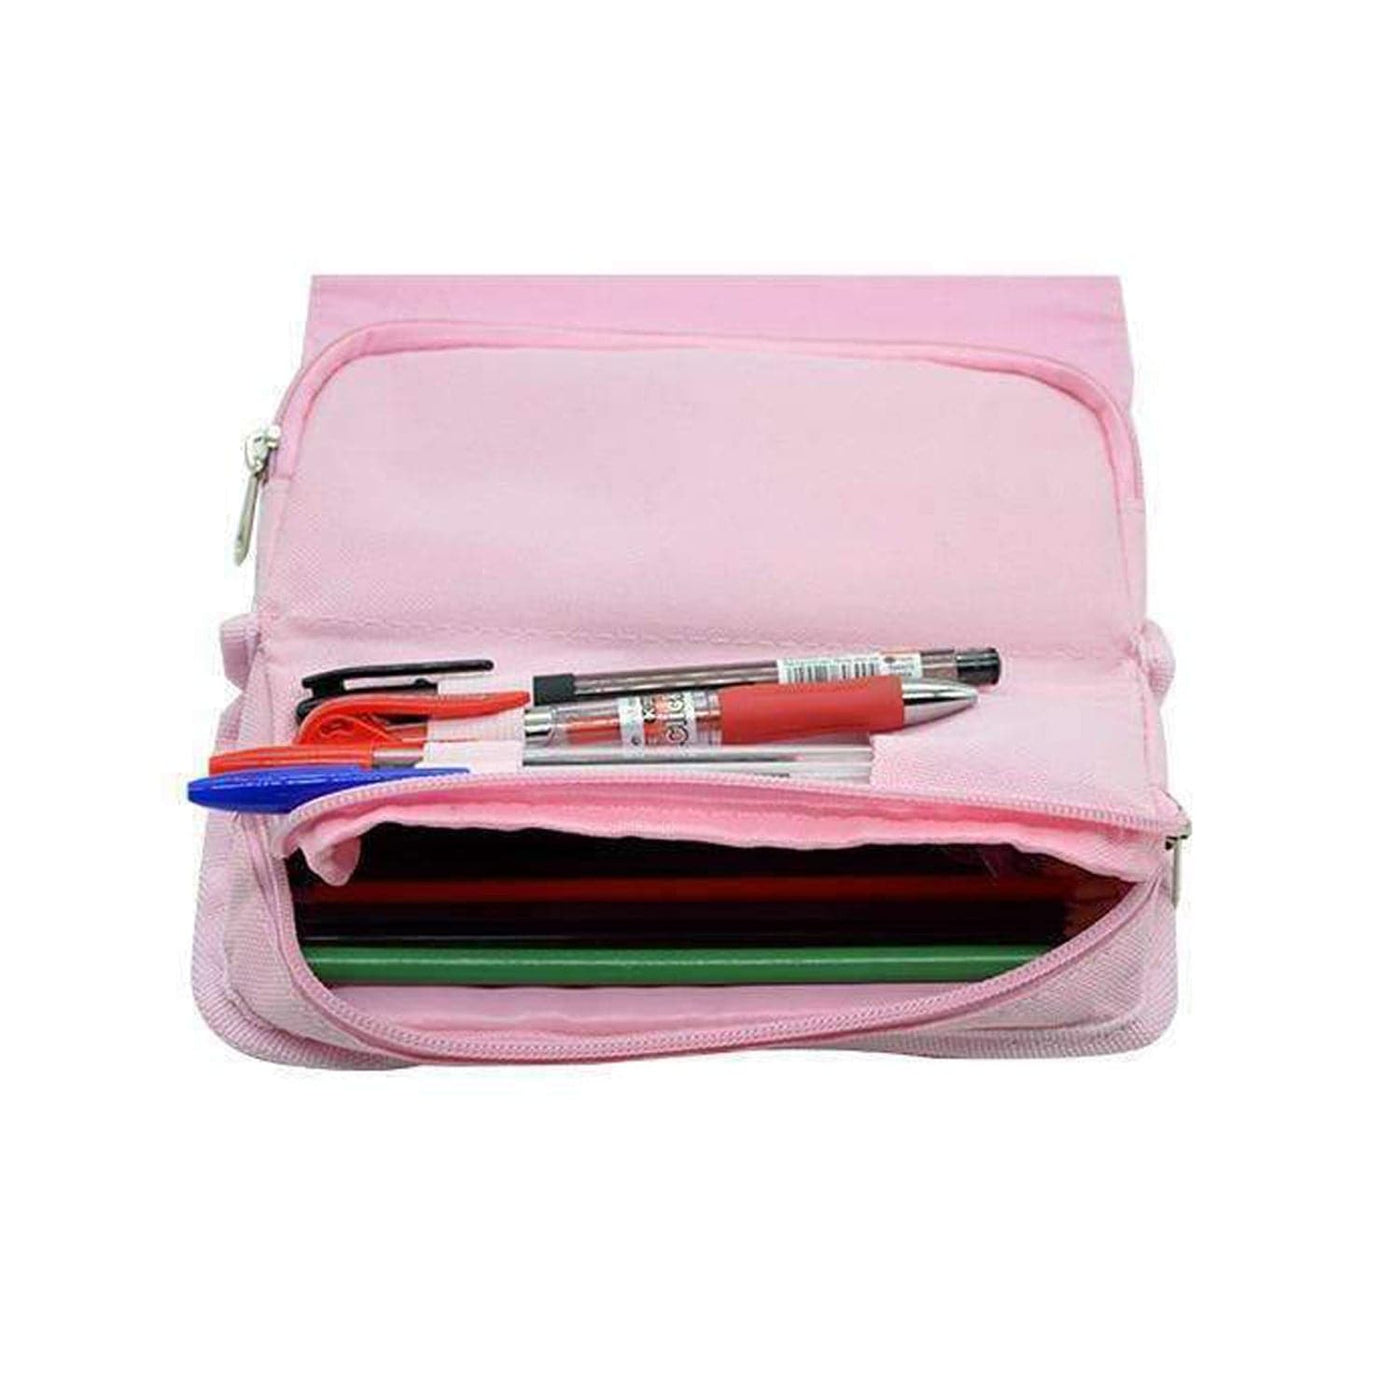 Basic Pink Flamingo Pattern Pencil Case